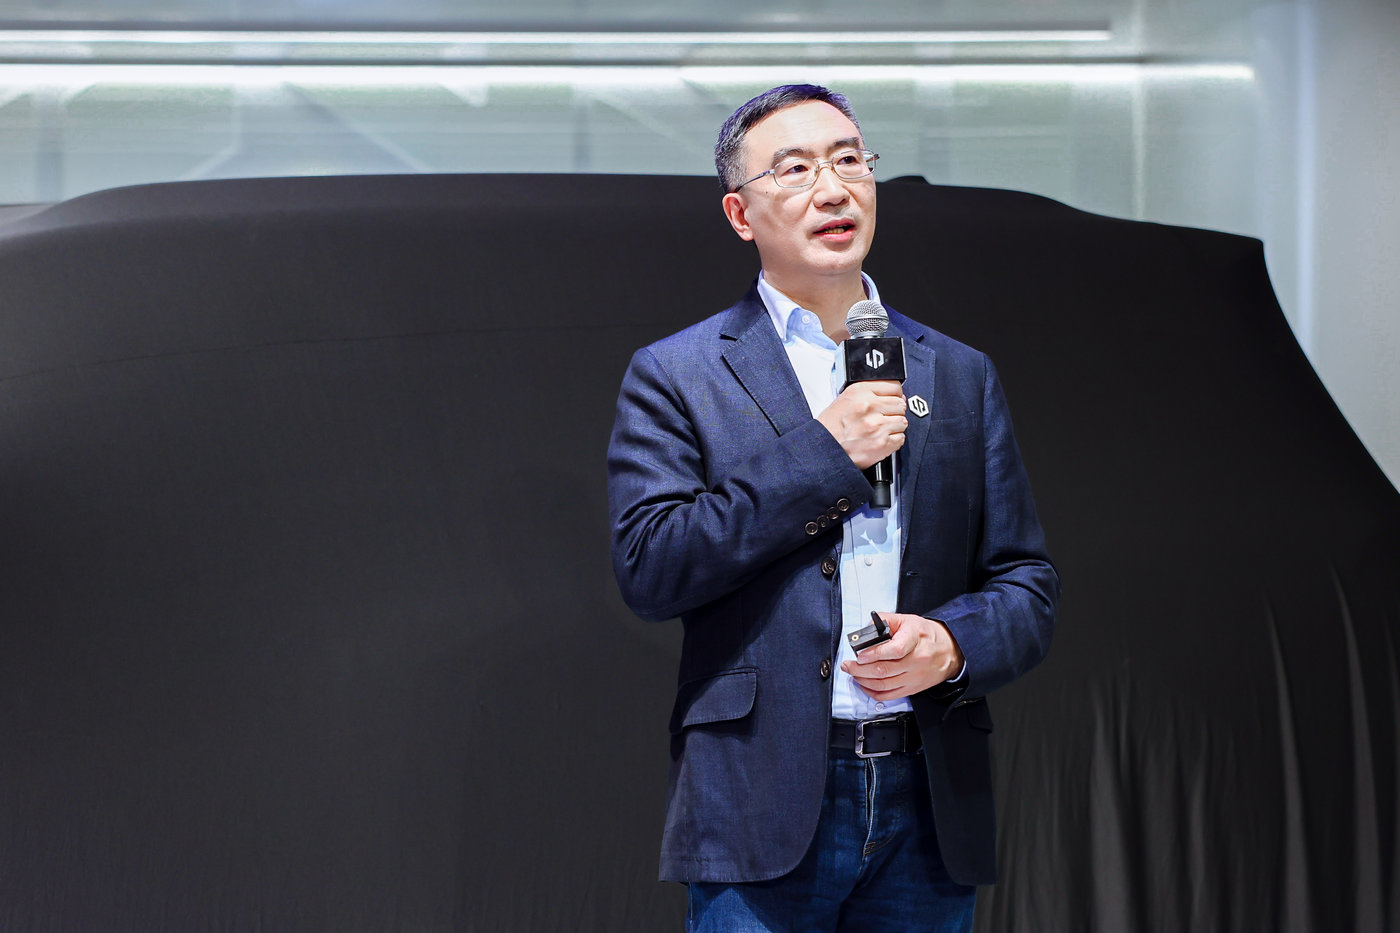 零跑汽车创始人、董事长、CEO 朱江明